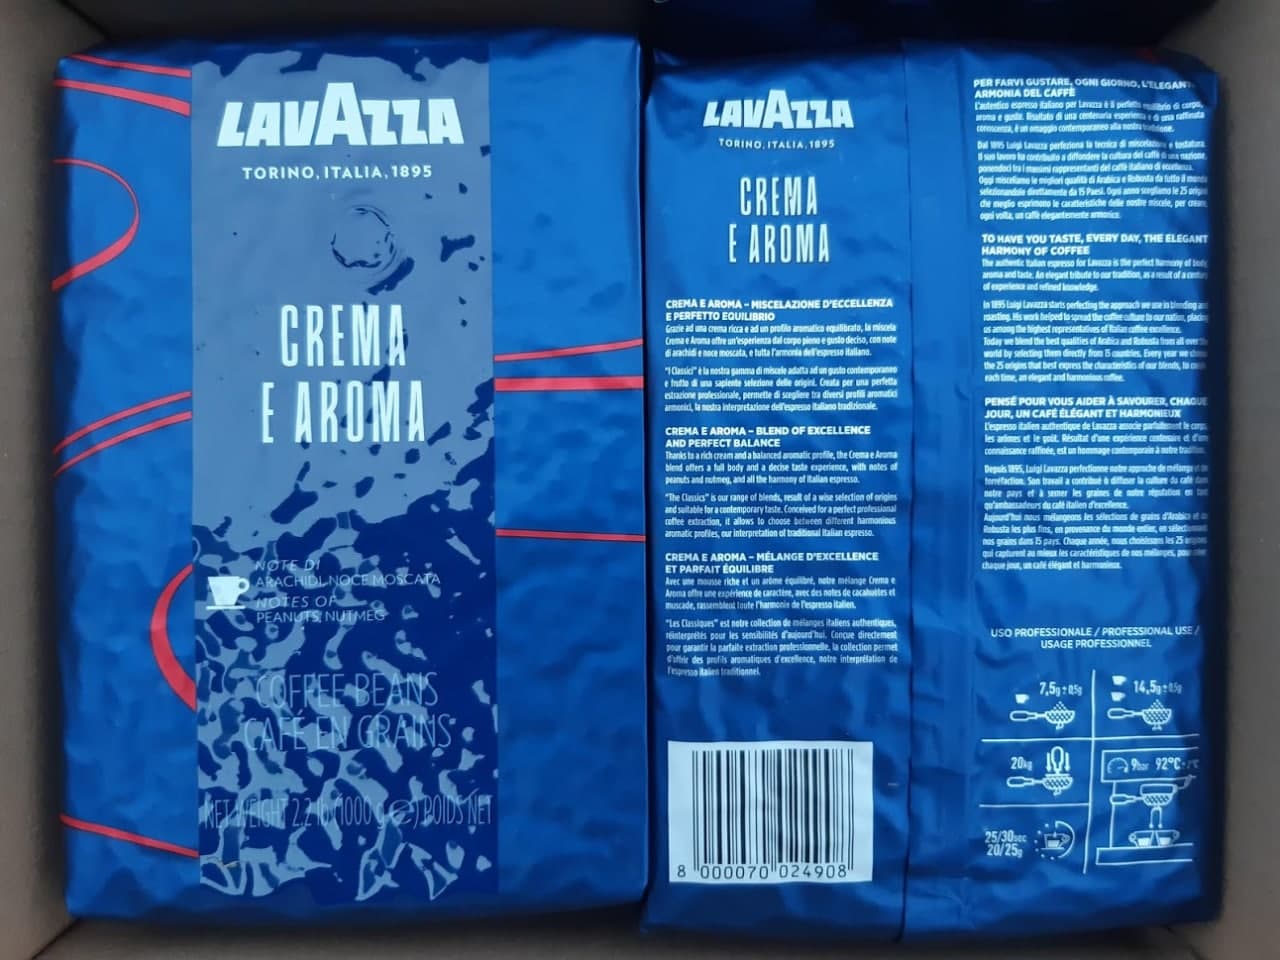 Pupiņu kafija "LAVAZZA" Classic Collection Crema e Aroma